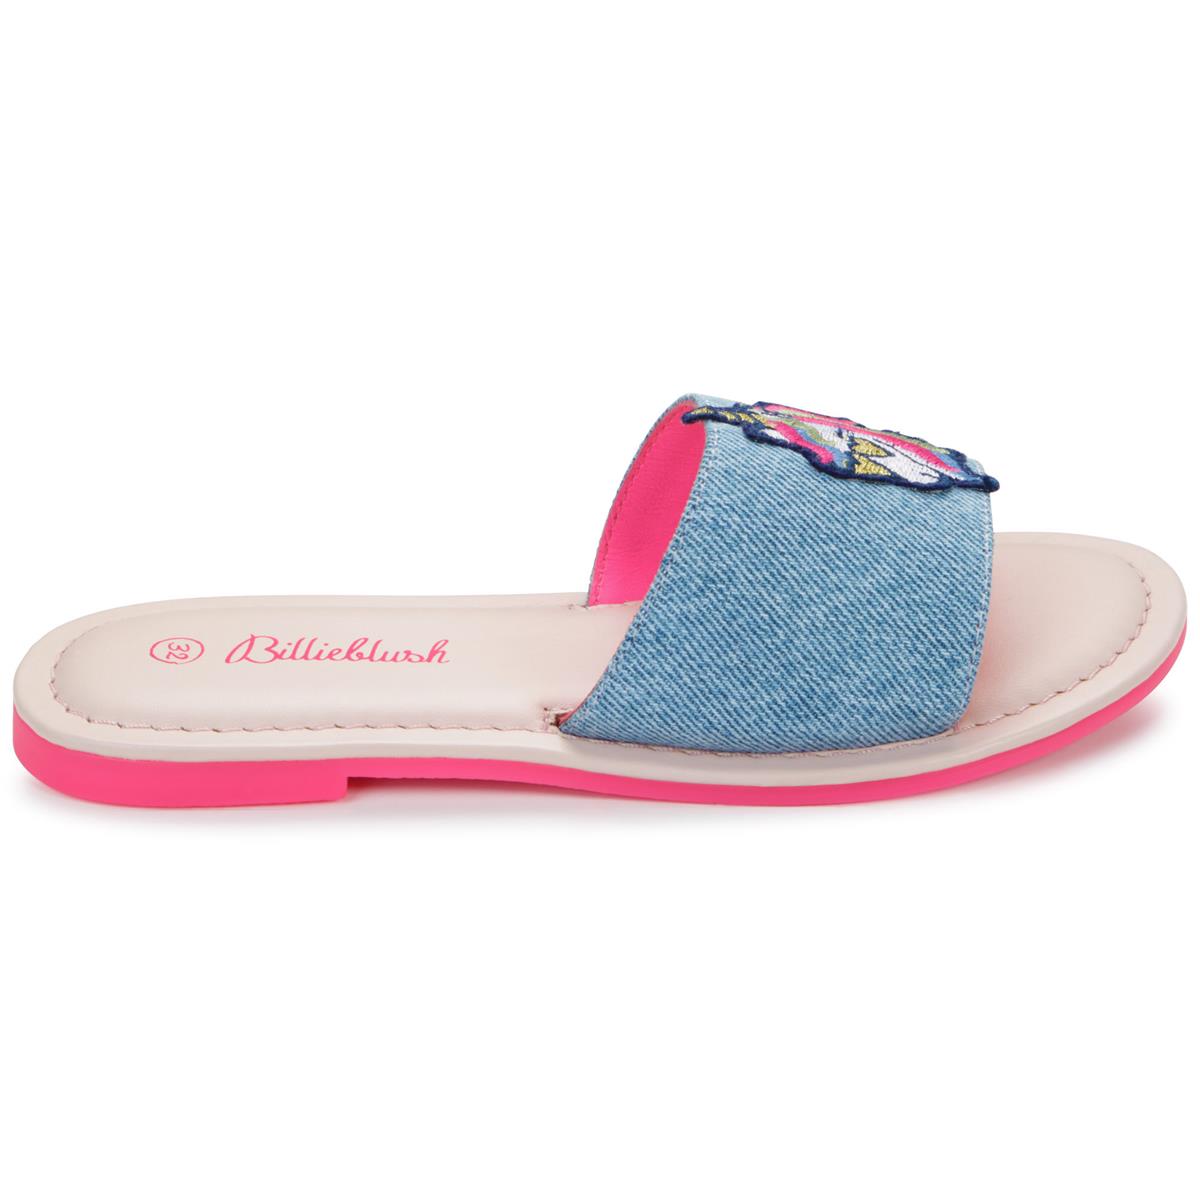 Girls Blue Denim Sandals